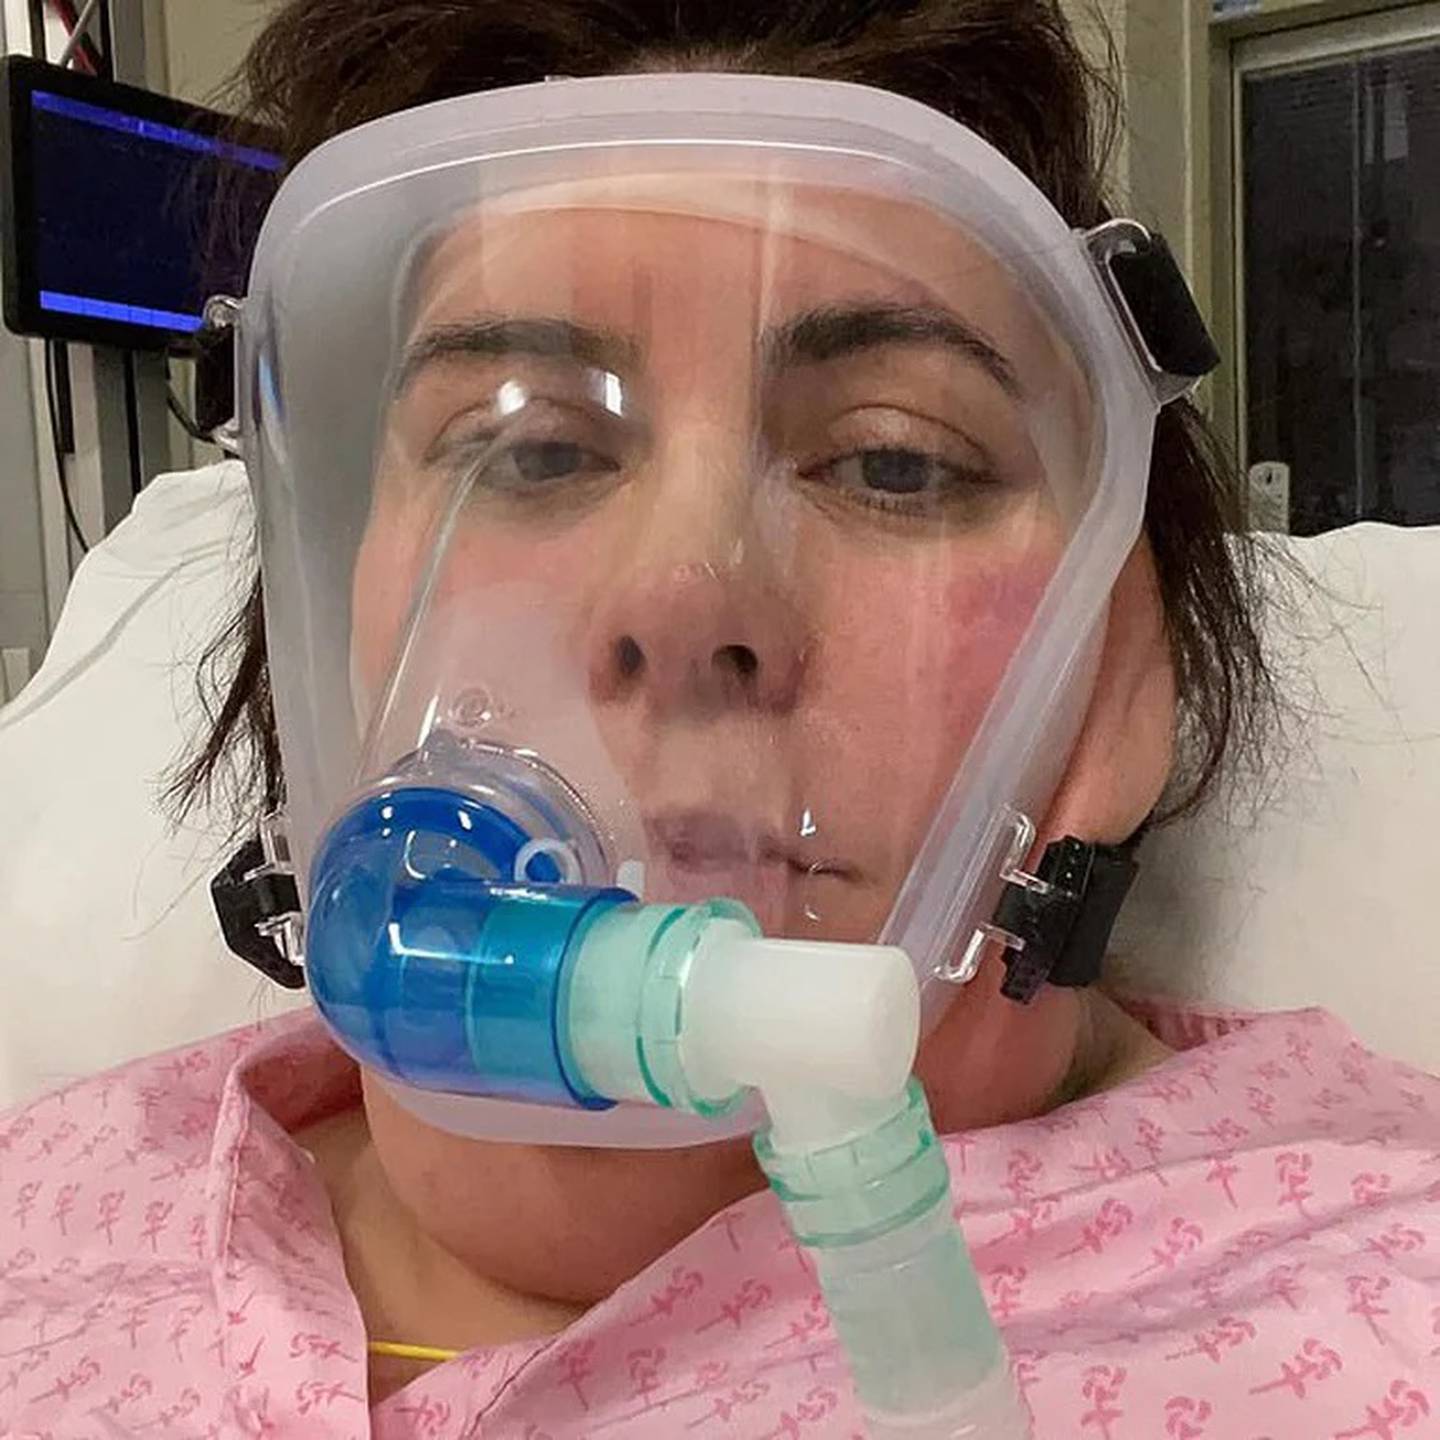 la enfermera de Inglaterra pasó 28 días en coma luego de contagiarse de covid-19, ella se llama Mónica Almeida y es enfermera especializada en respiración, quien trabaja en el condado de Lincolnshire y nació en Portugal